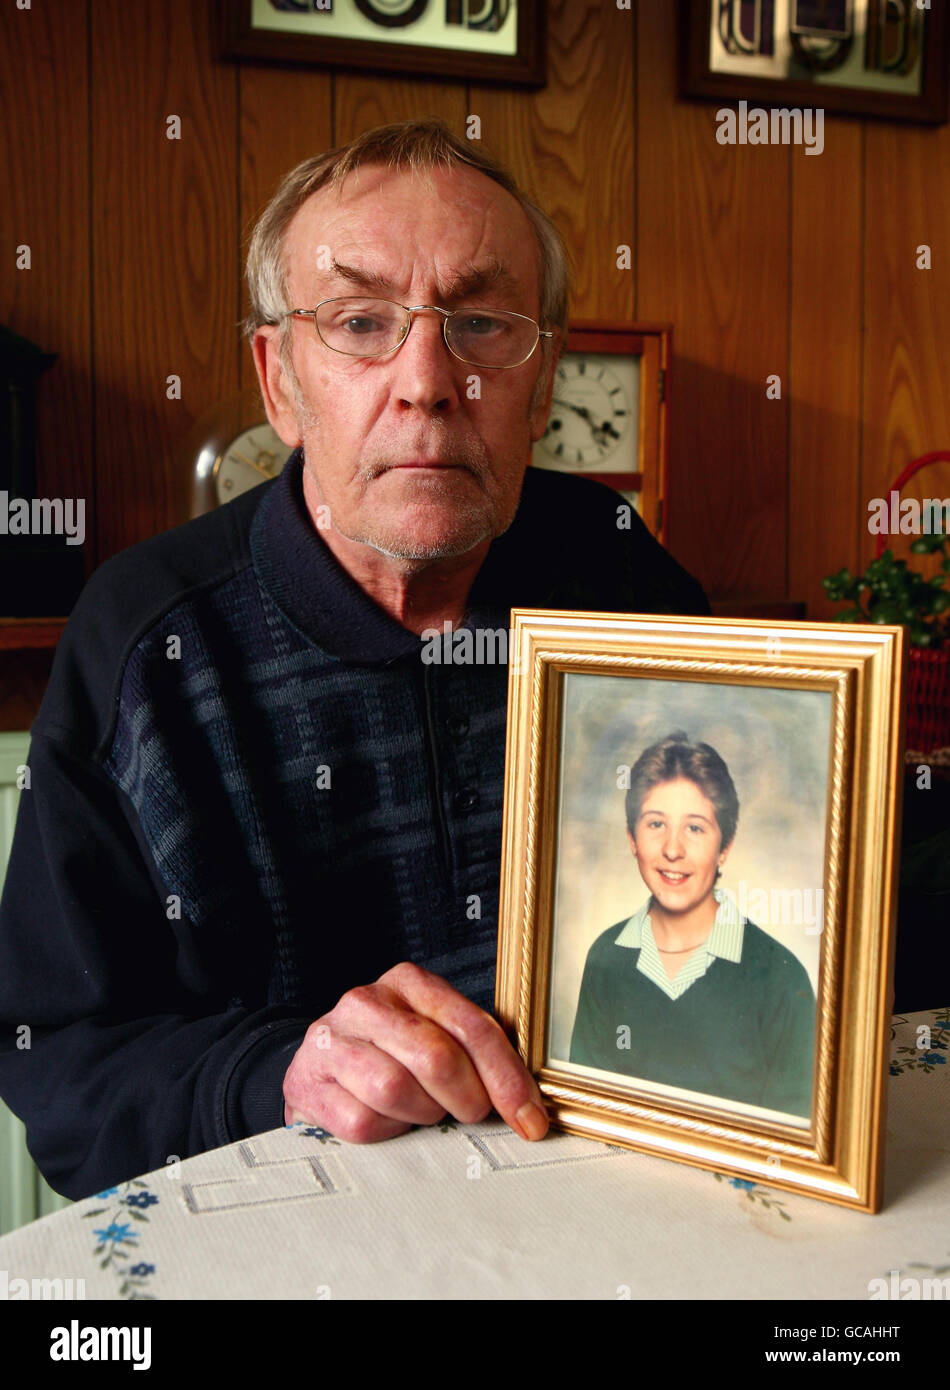 Cliff Tiltman mit einem Bild seiner Tochter Claire Tiltman das Schulmädchen wurde 1993 bei einem rasenden Angriff zu Tode erstochen, als es zu Hause in Greenhithe, Kent, war. Detektive untersuchen ein handgeschriebenes Pappschild, das am Straßenrand hinterlassen wurde und behauptet, den Mörder eines Gymnasiamädchen zu nennen, das vor 17 Jahren ermordet wurde. Stockfoto